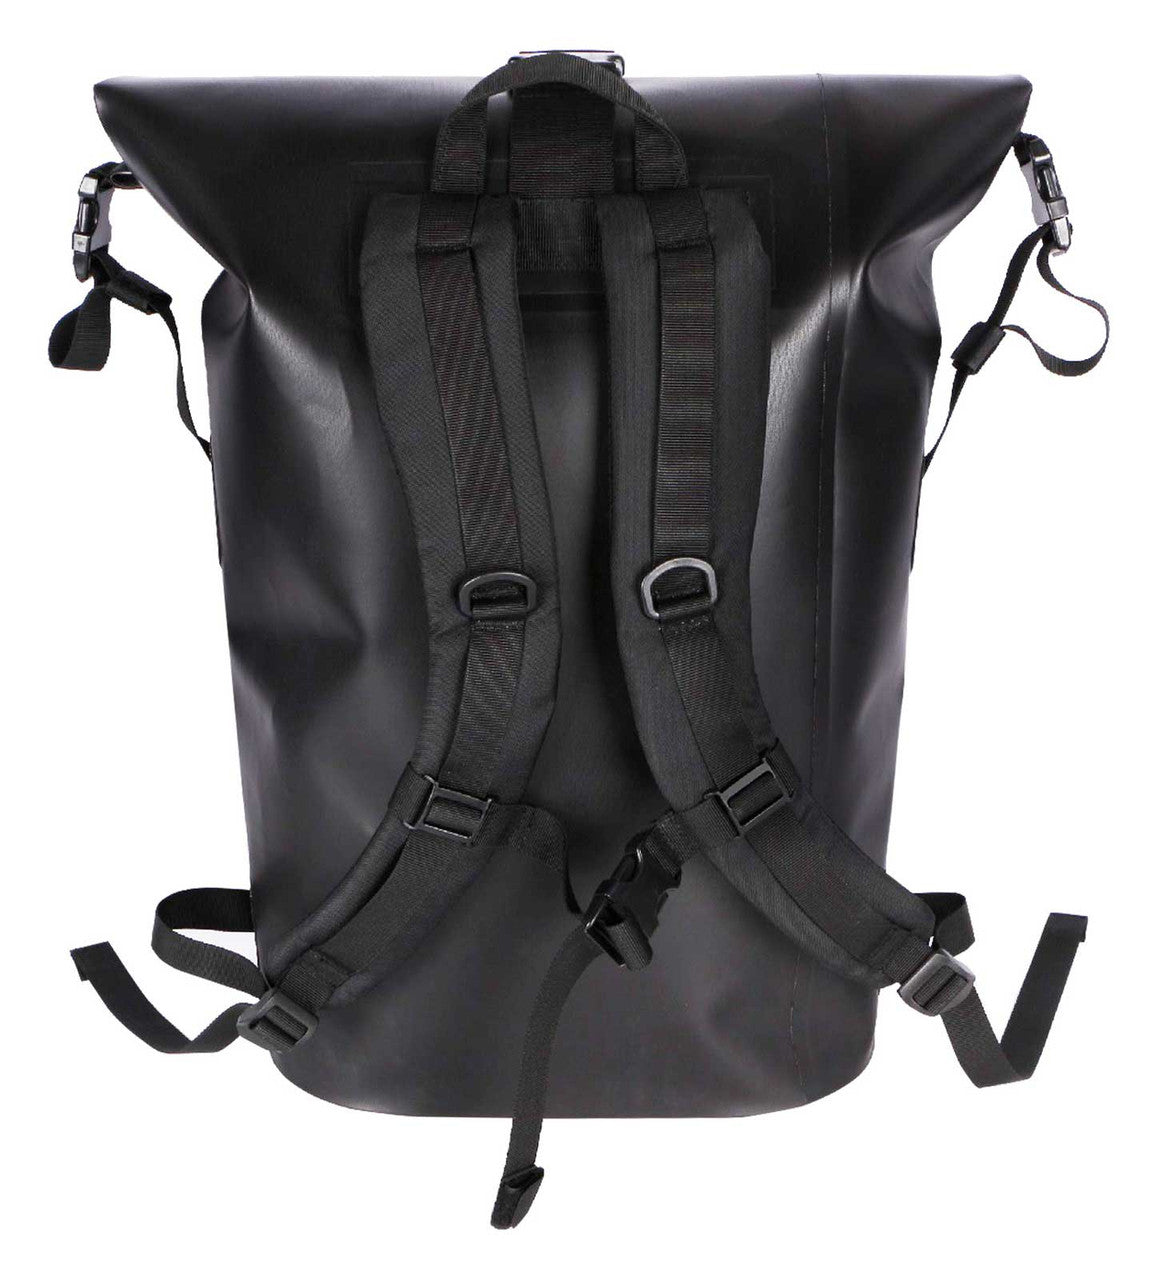 Waterproof Backpack Black(Bag)